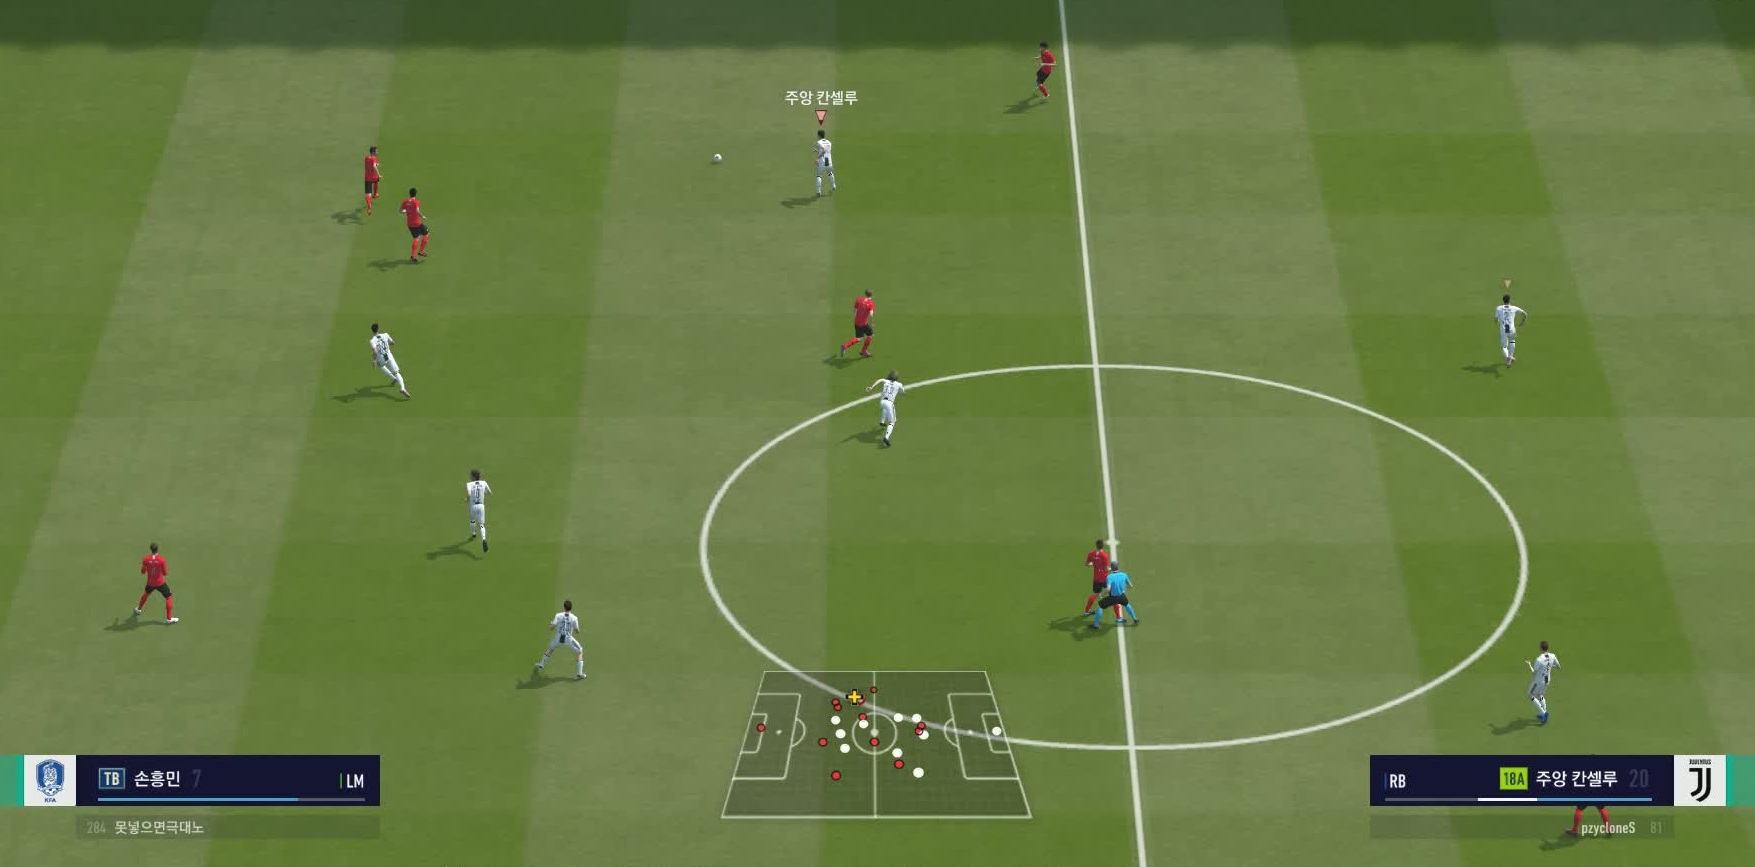 Cần trau dồi kỹ năng FIFA Online 4 nào khi xây dựng đội hình?